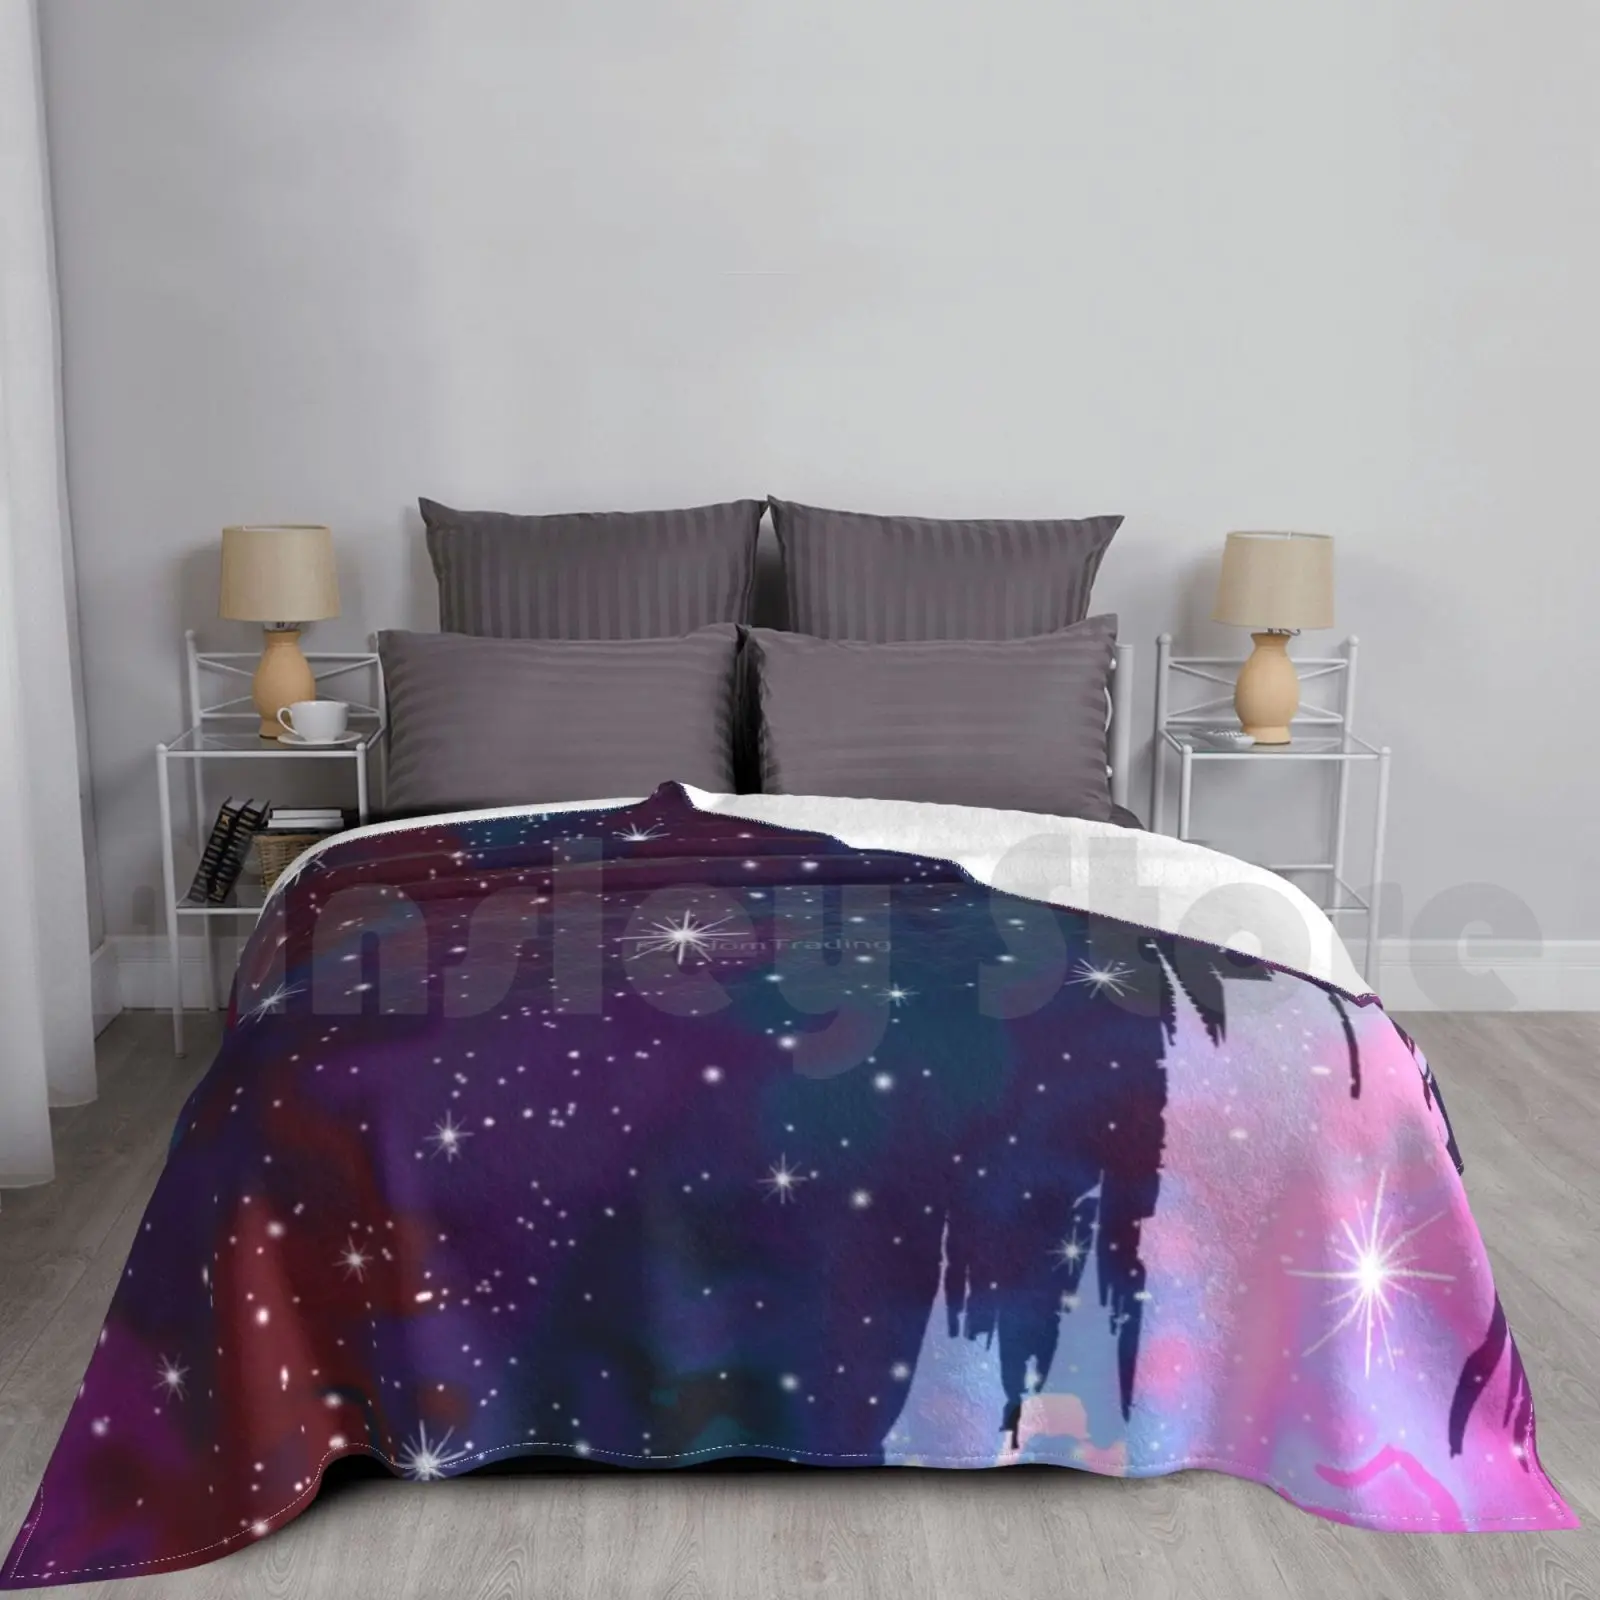 

Магический замок силуэт пространство одеяло для дивана кровати путешествия психоделический абстрактный волшебный замок Волшебное Королевство